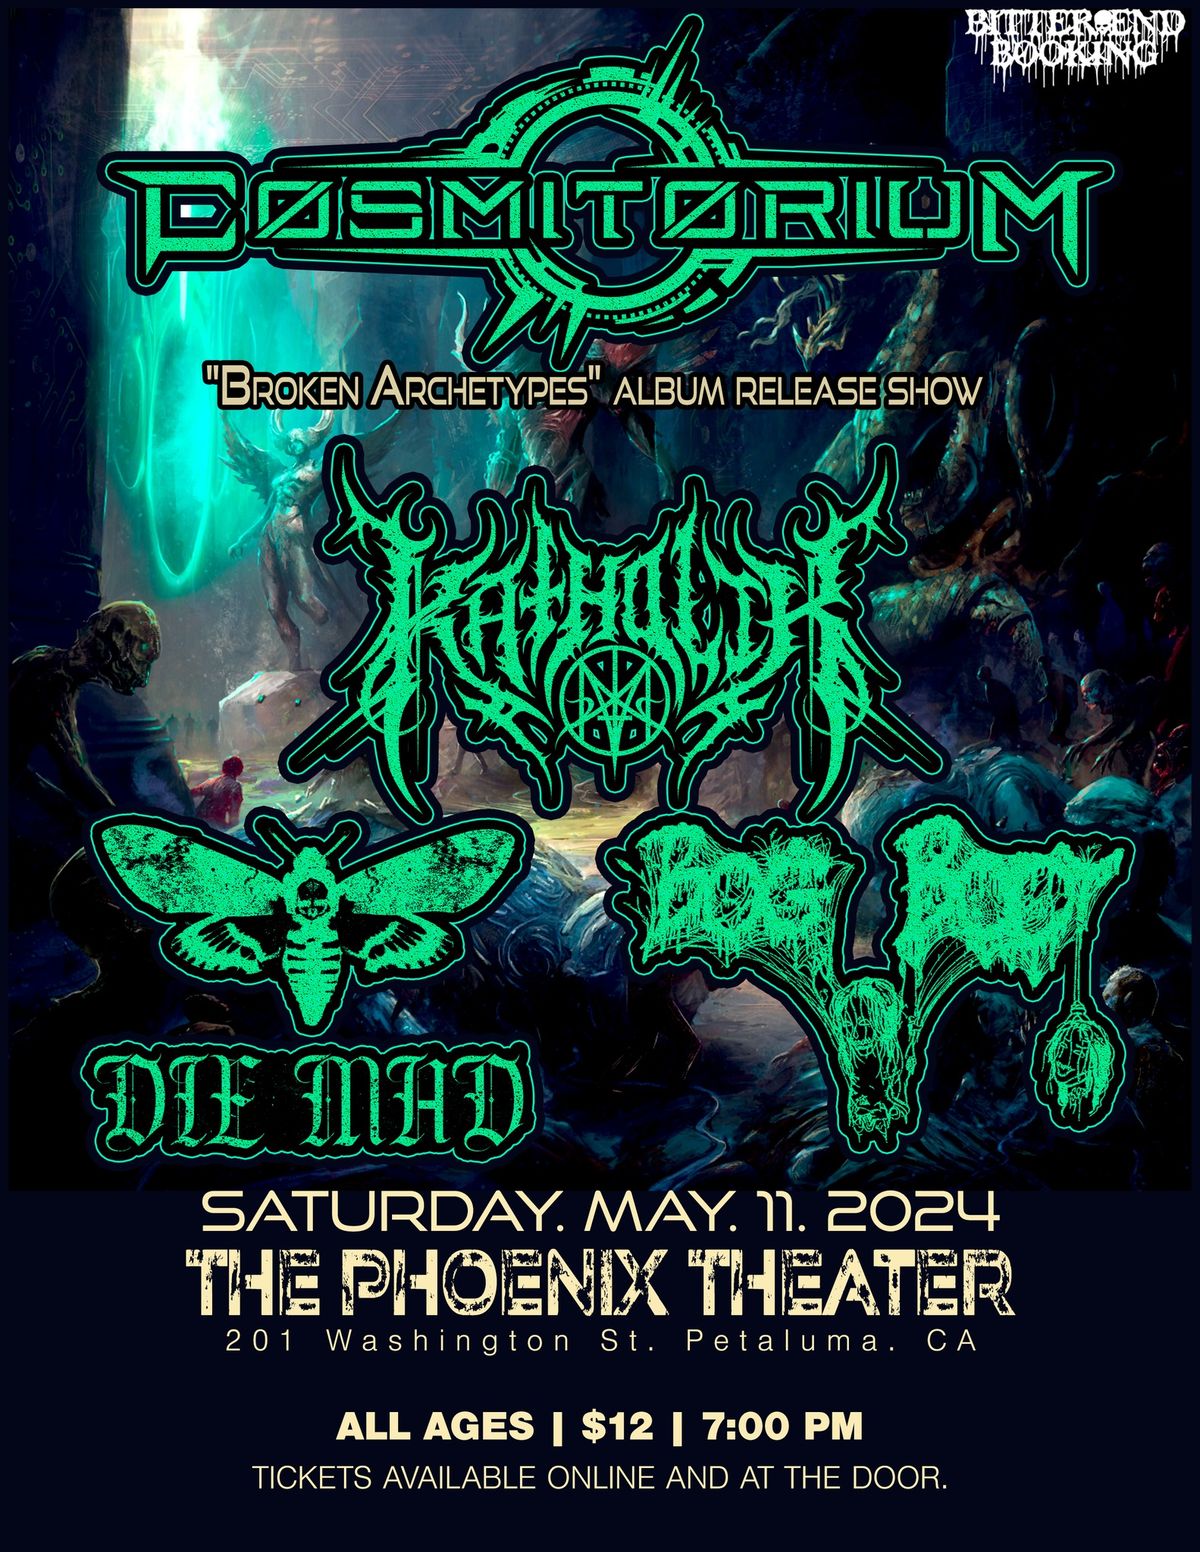 Cosmitorium album release show at The Phoenix Theater